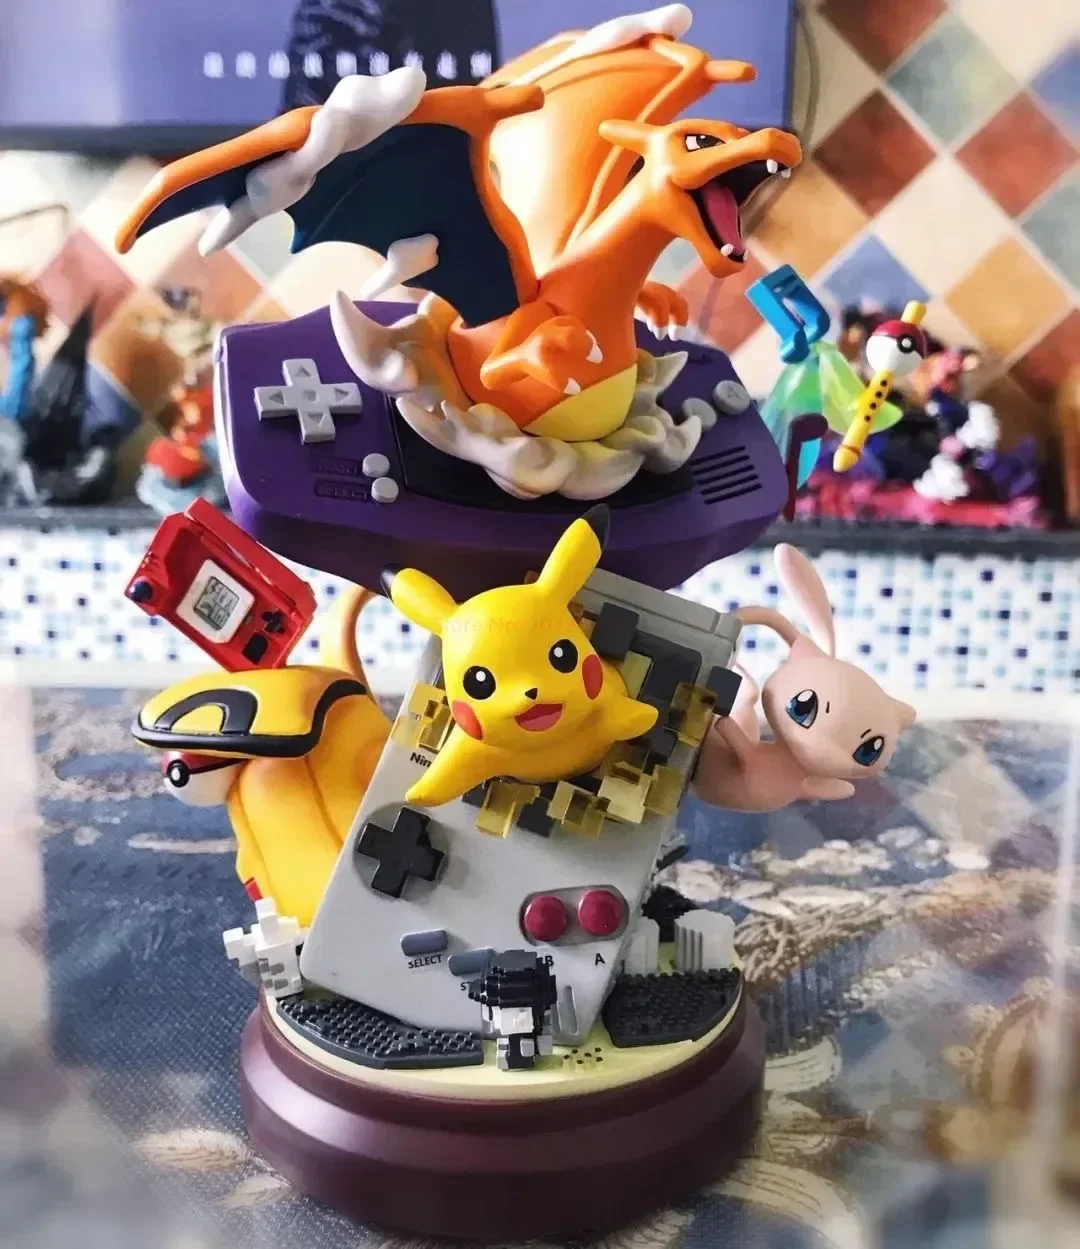 Pokémon Pikachu Akcie Obrázok Hračky Anime Živice Stanice Gameboy Pika Mew Charizard 19 cm Bábiku Model Pvc Ornament Hračka Darček